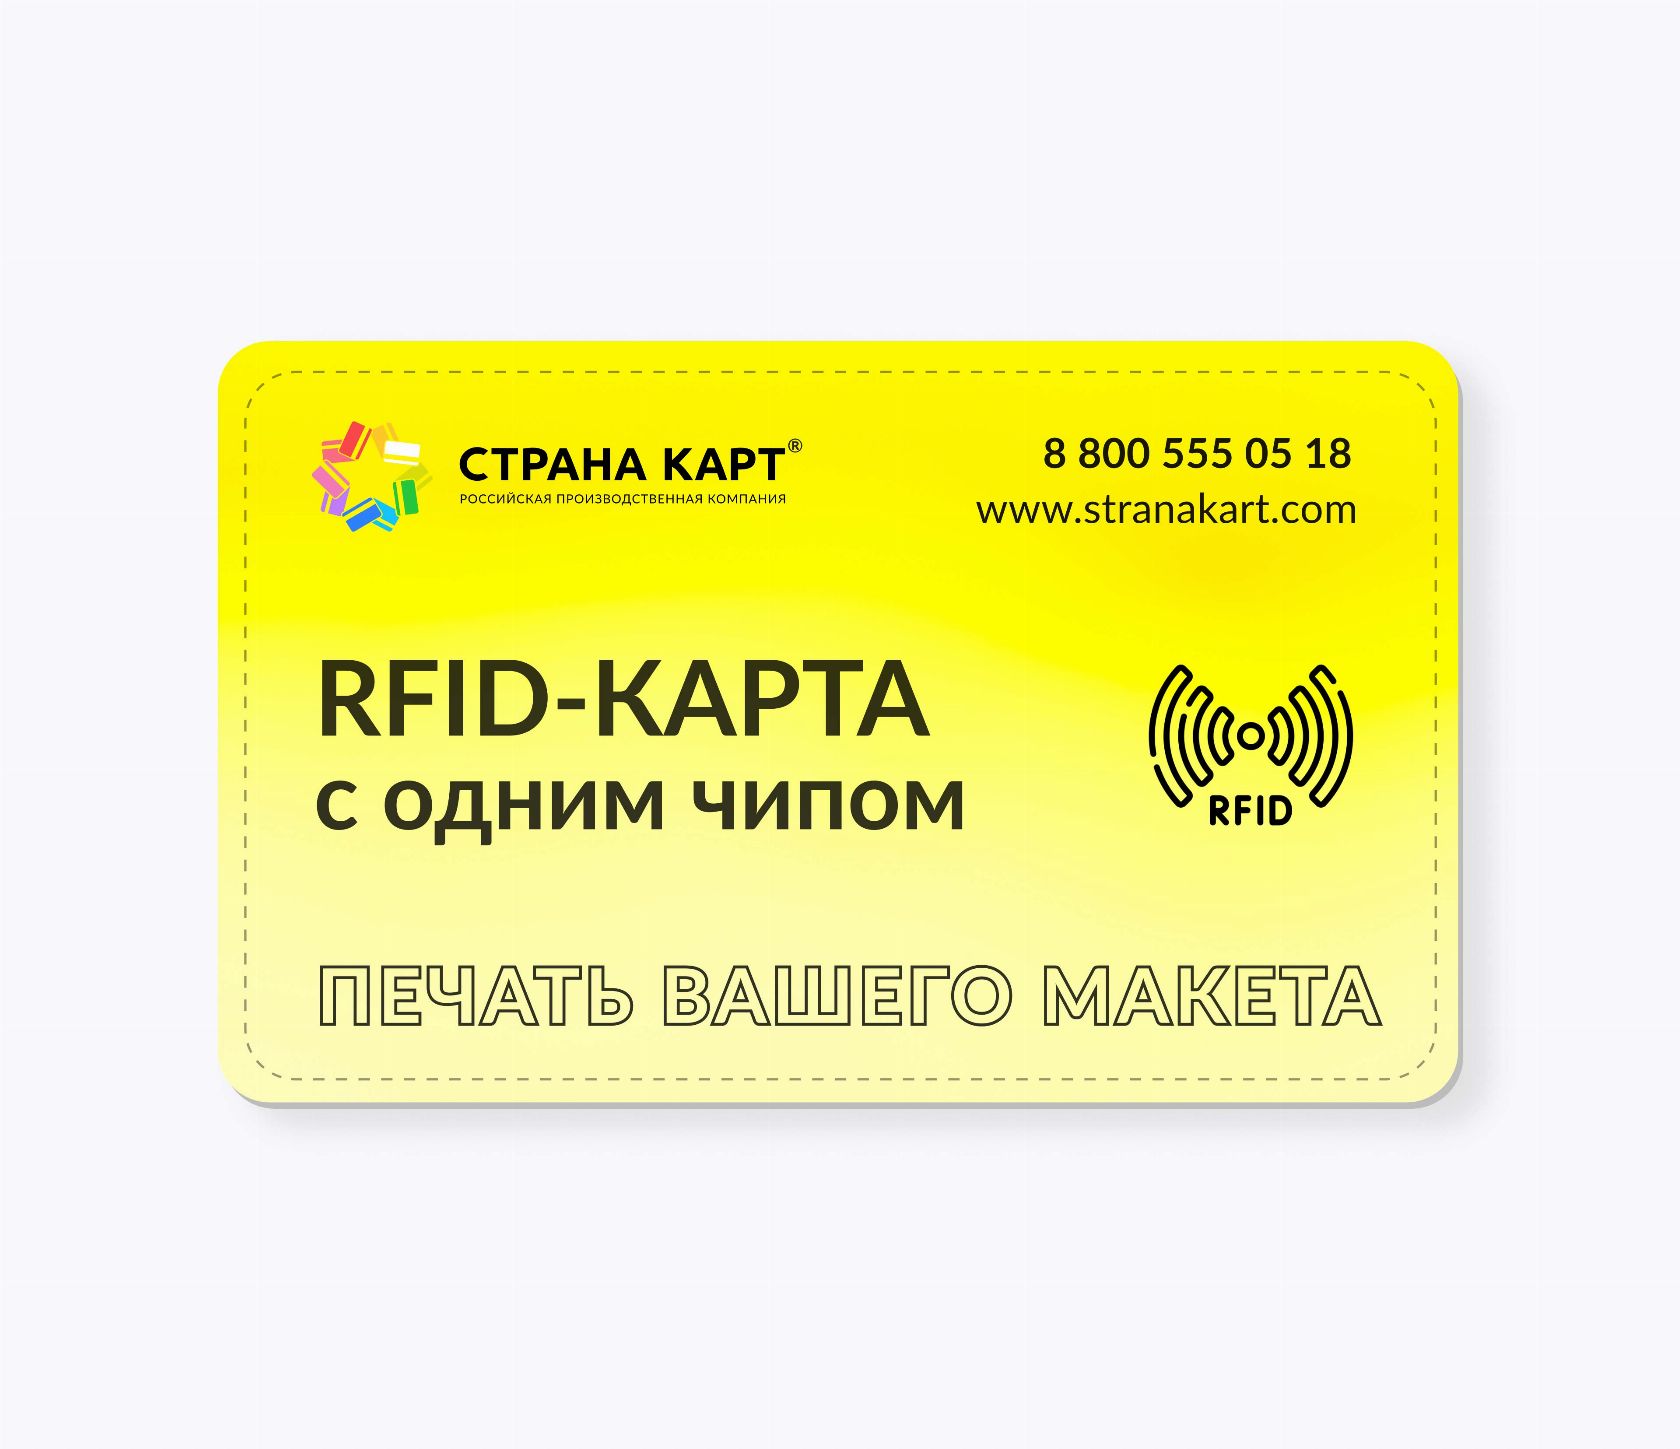 RFID-карты с чипом EM-MARINE ISO EM4200, TK4100 печать вашего макета RFID-карты с чипом EM-MARINE ISO EM4200, TK4100